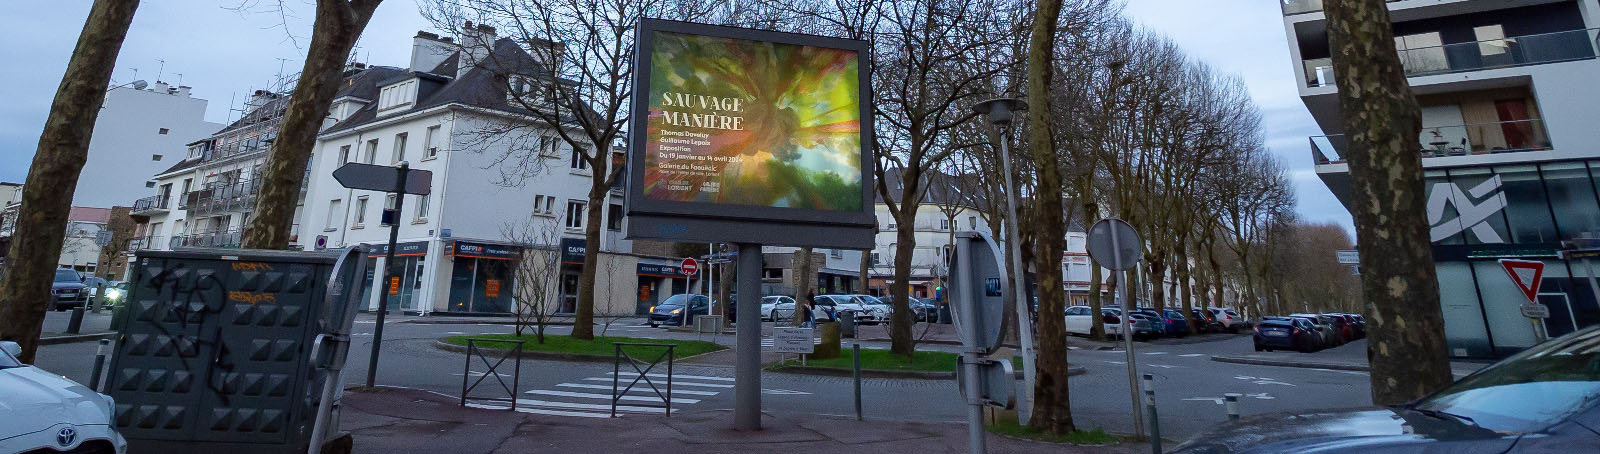 Affichage public Sauvage Manière Lorient